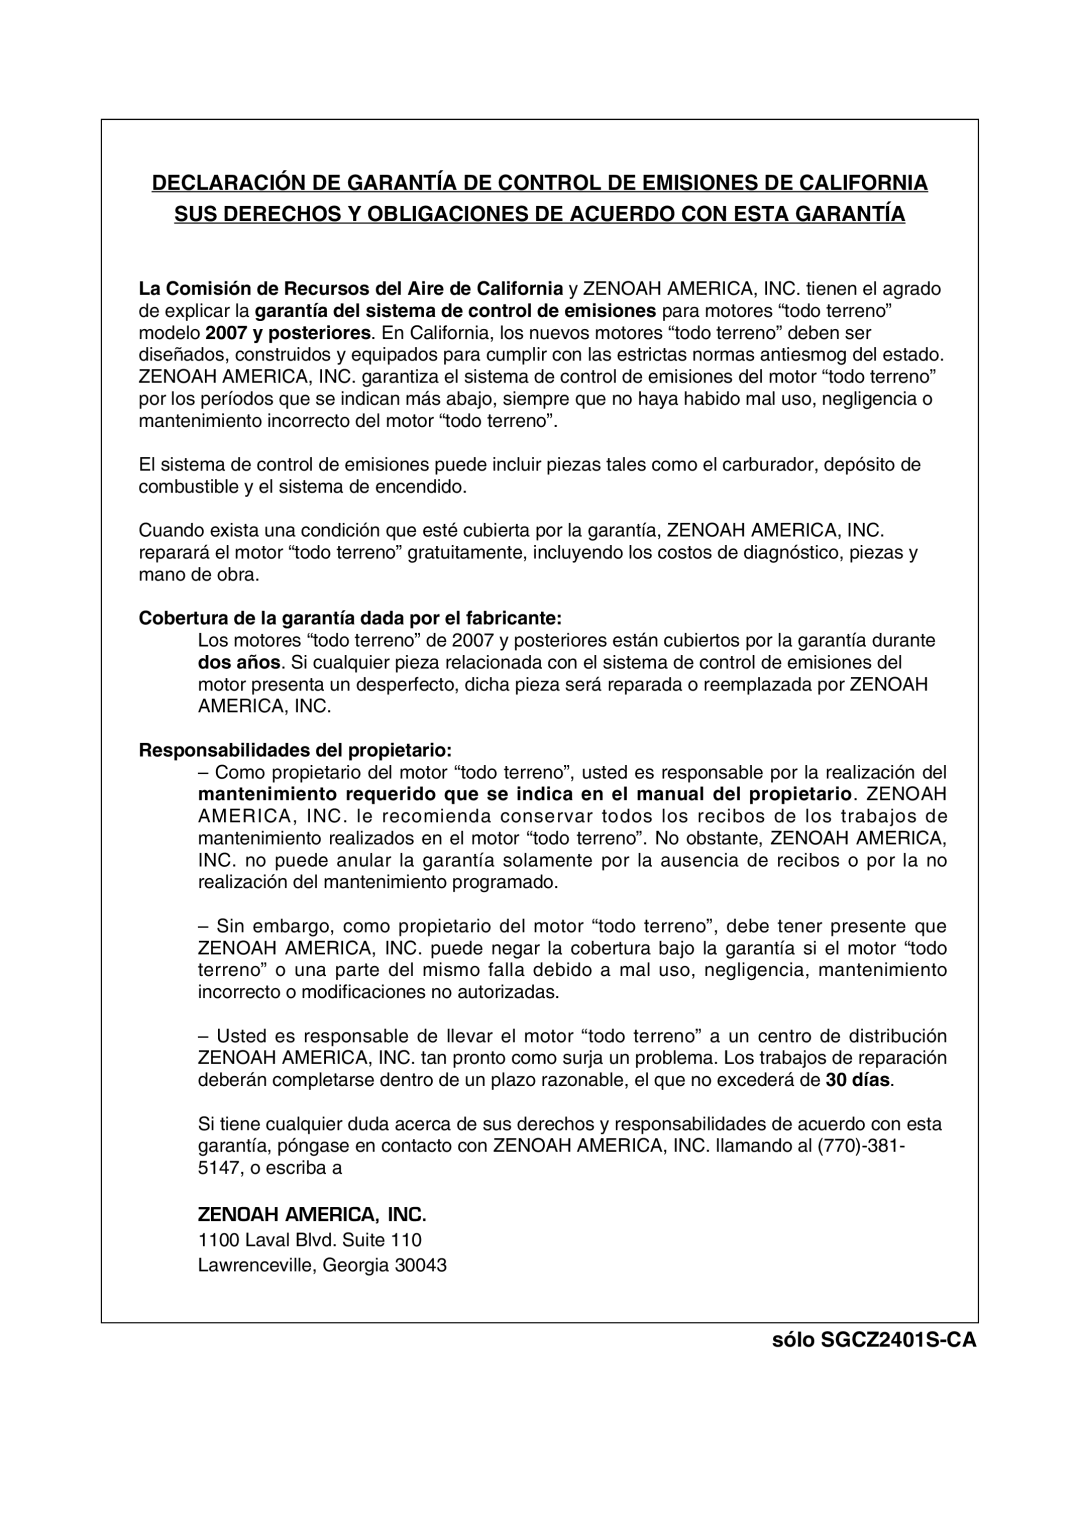 RedMax SGCZ2401S-CA manual Cobertura de la garantía dada por el fabricante, Responsabilidades del propietario 